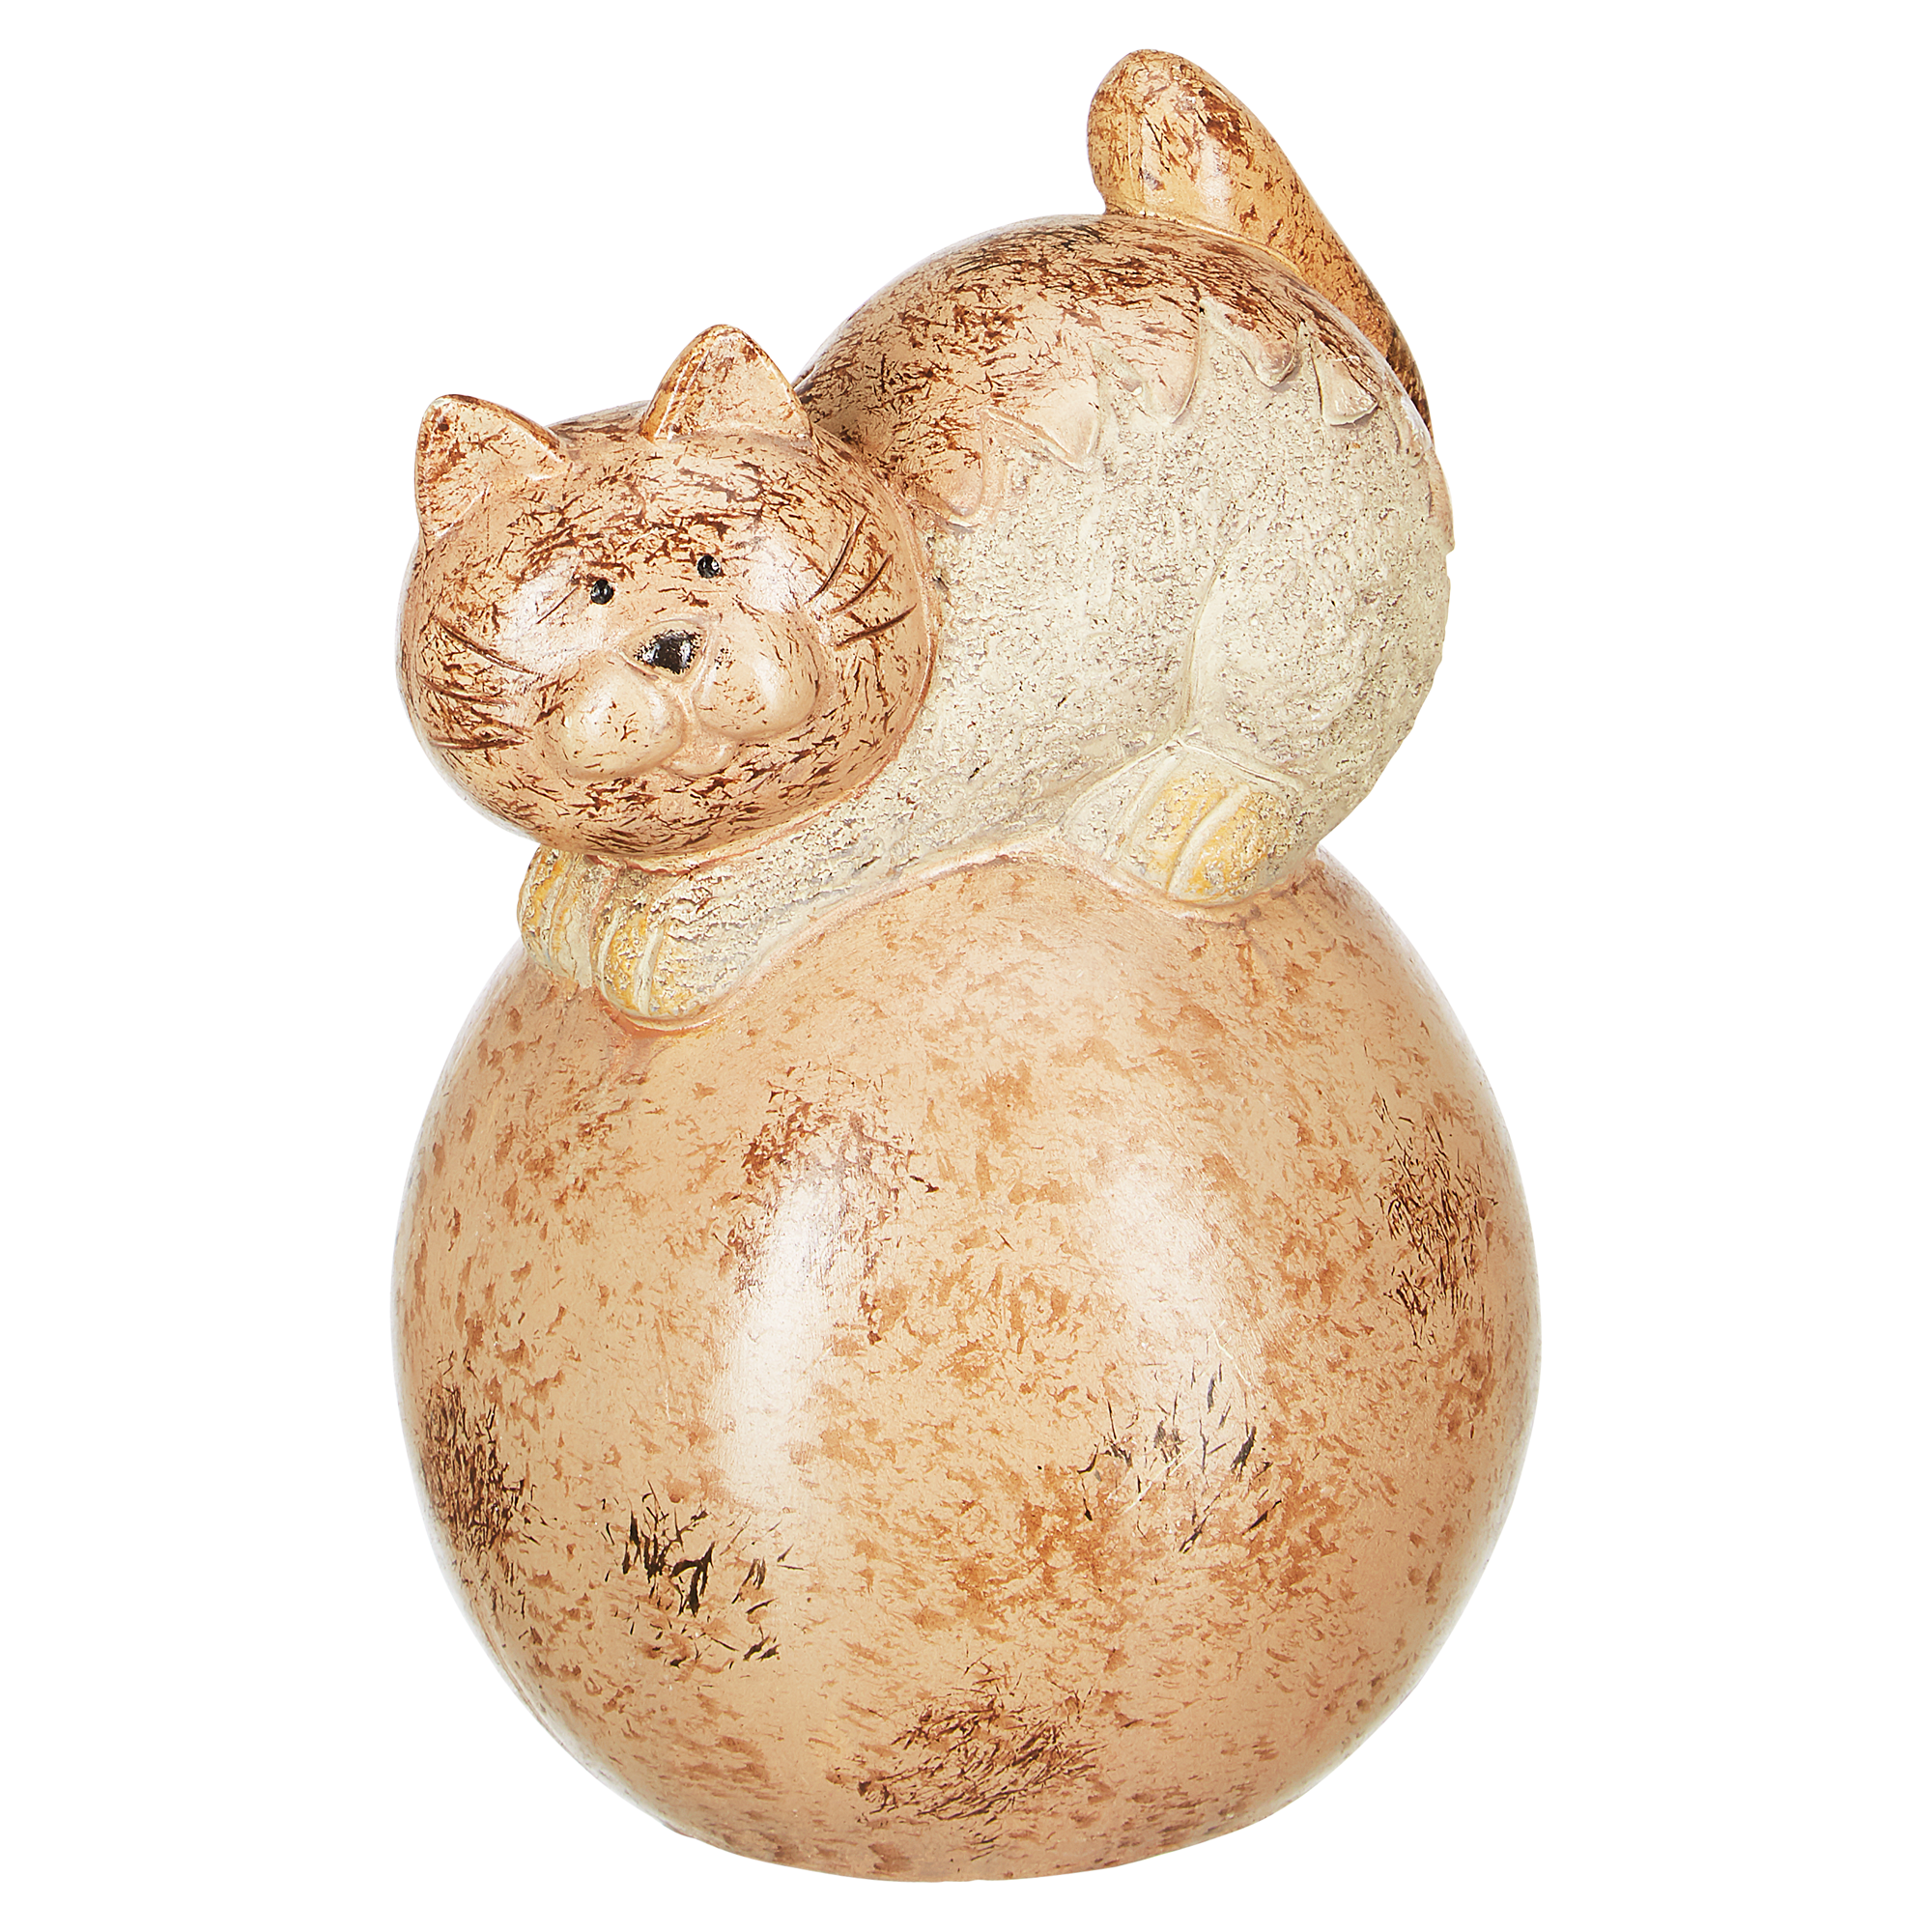 Gartenfigur Katze auf Ball 16 x 24 x 16 cm + product picture